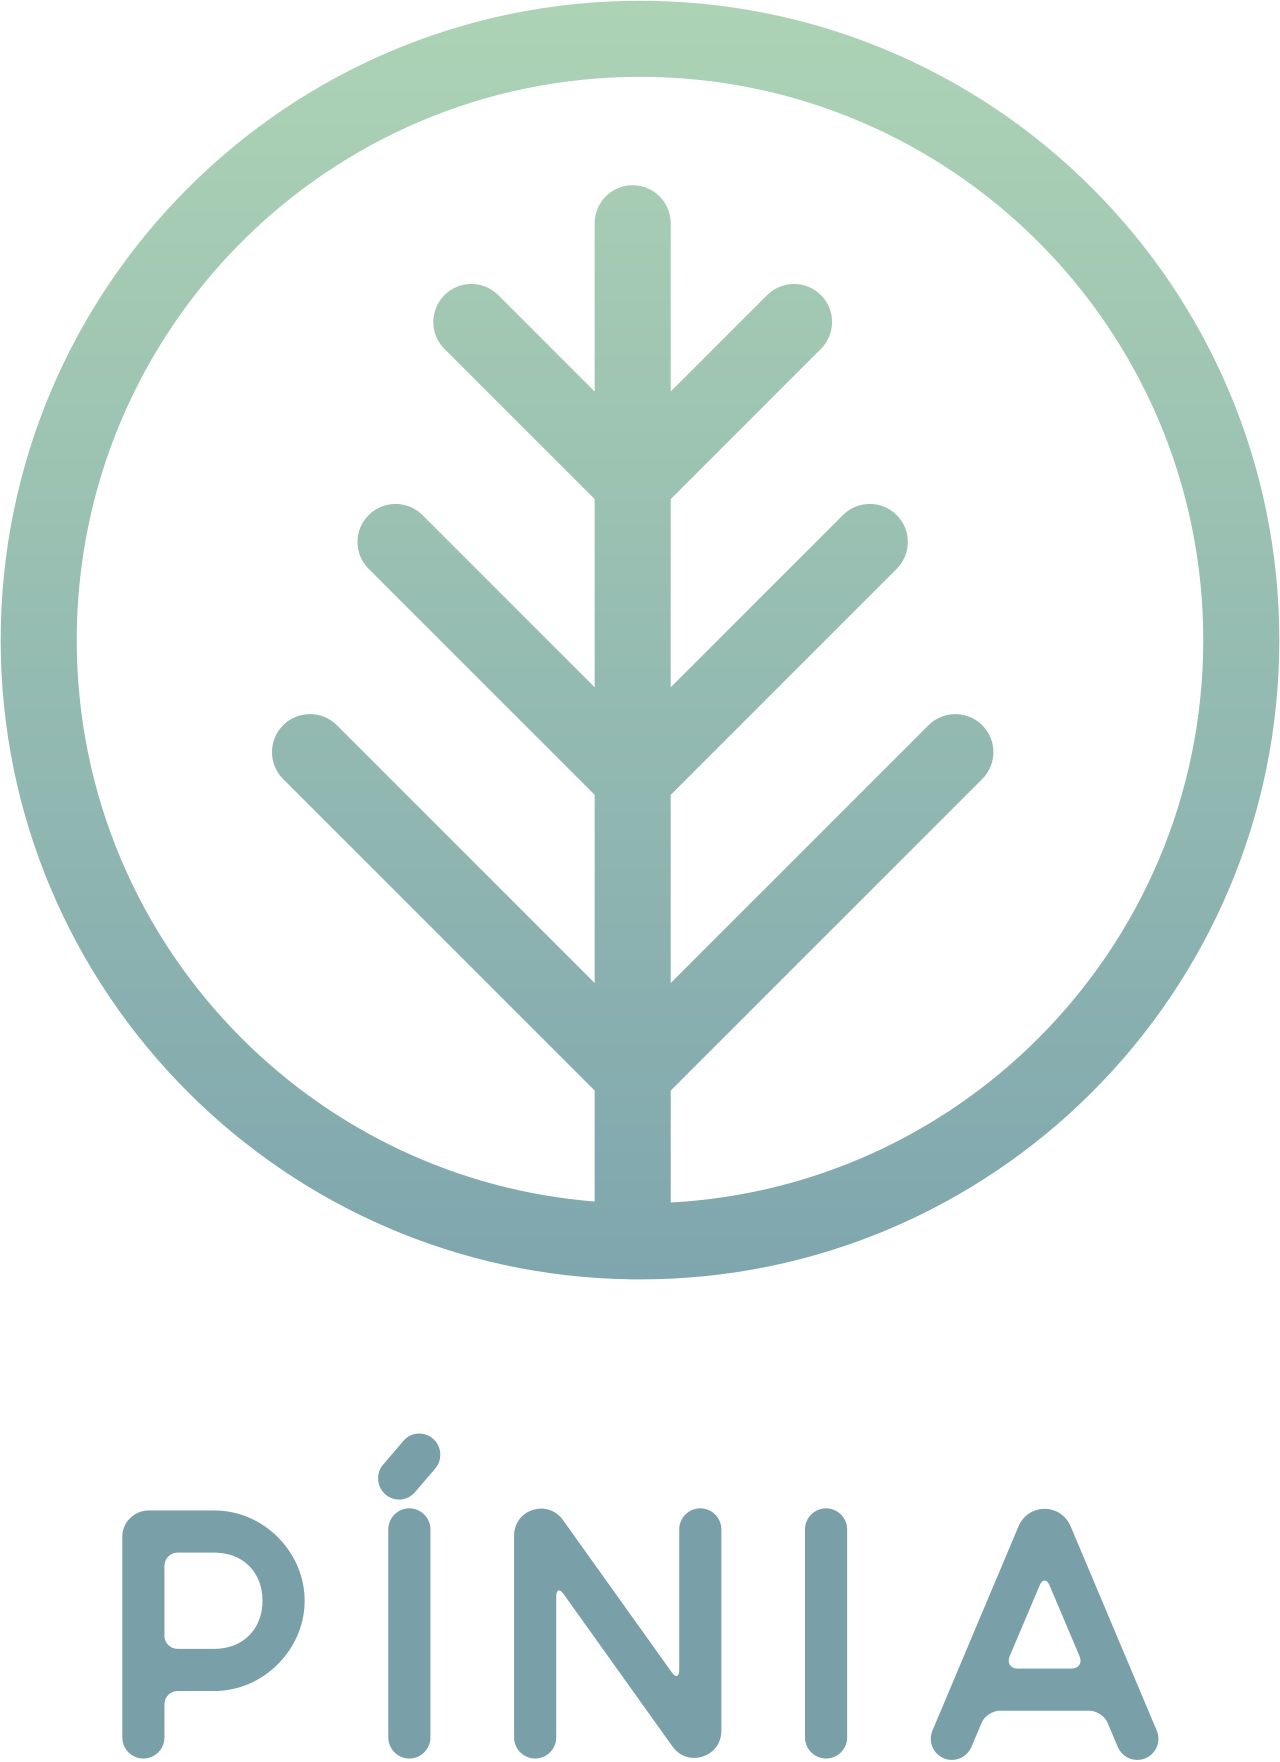 Pínia's logo